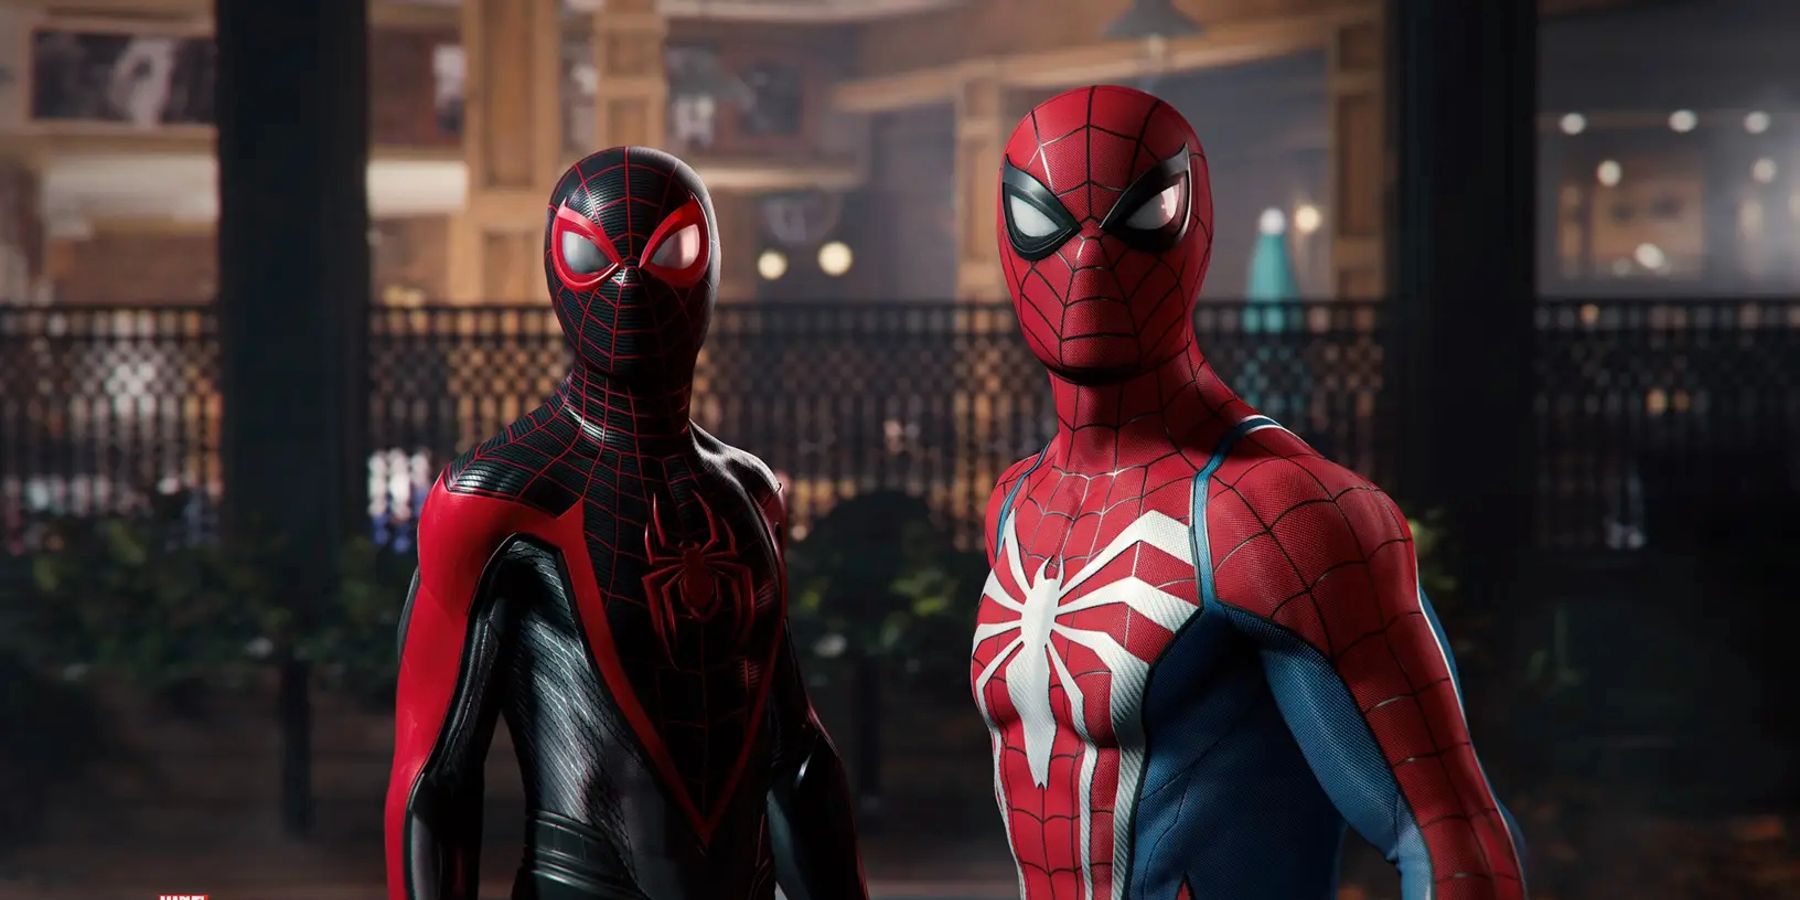 Wskazówki dotyczące wycieków w grze Multiplayer Marvel, możliwe PS5 Exclusive